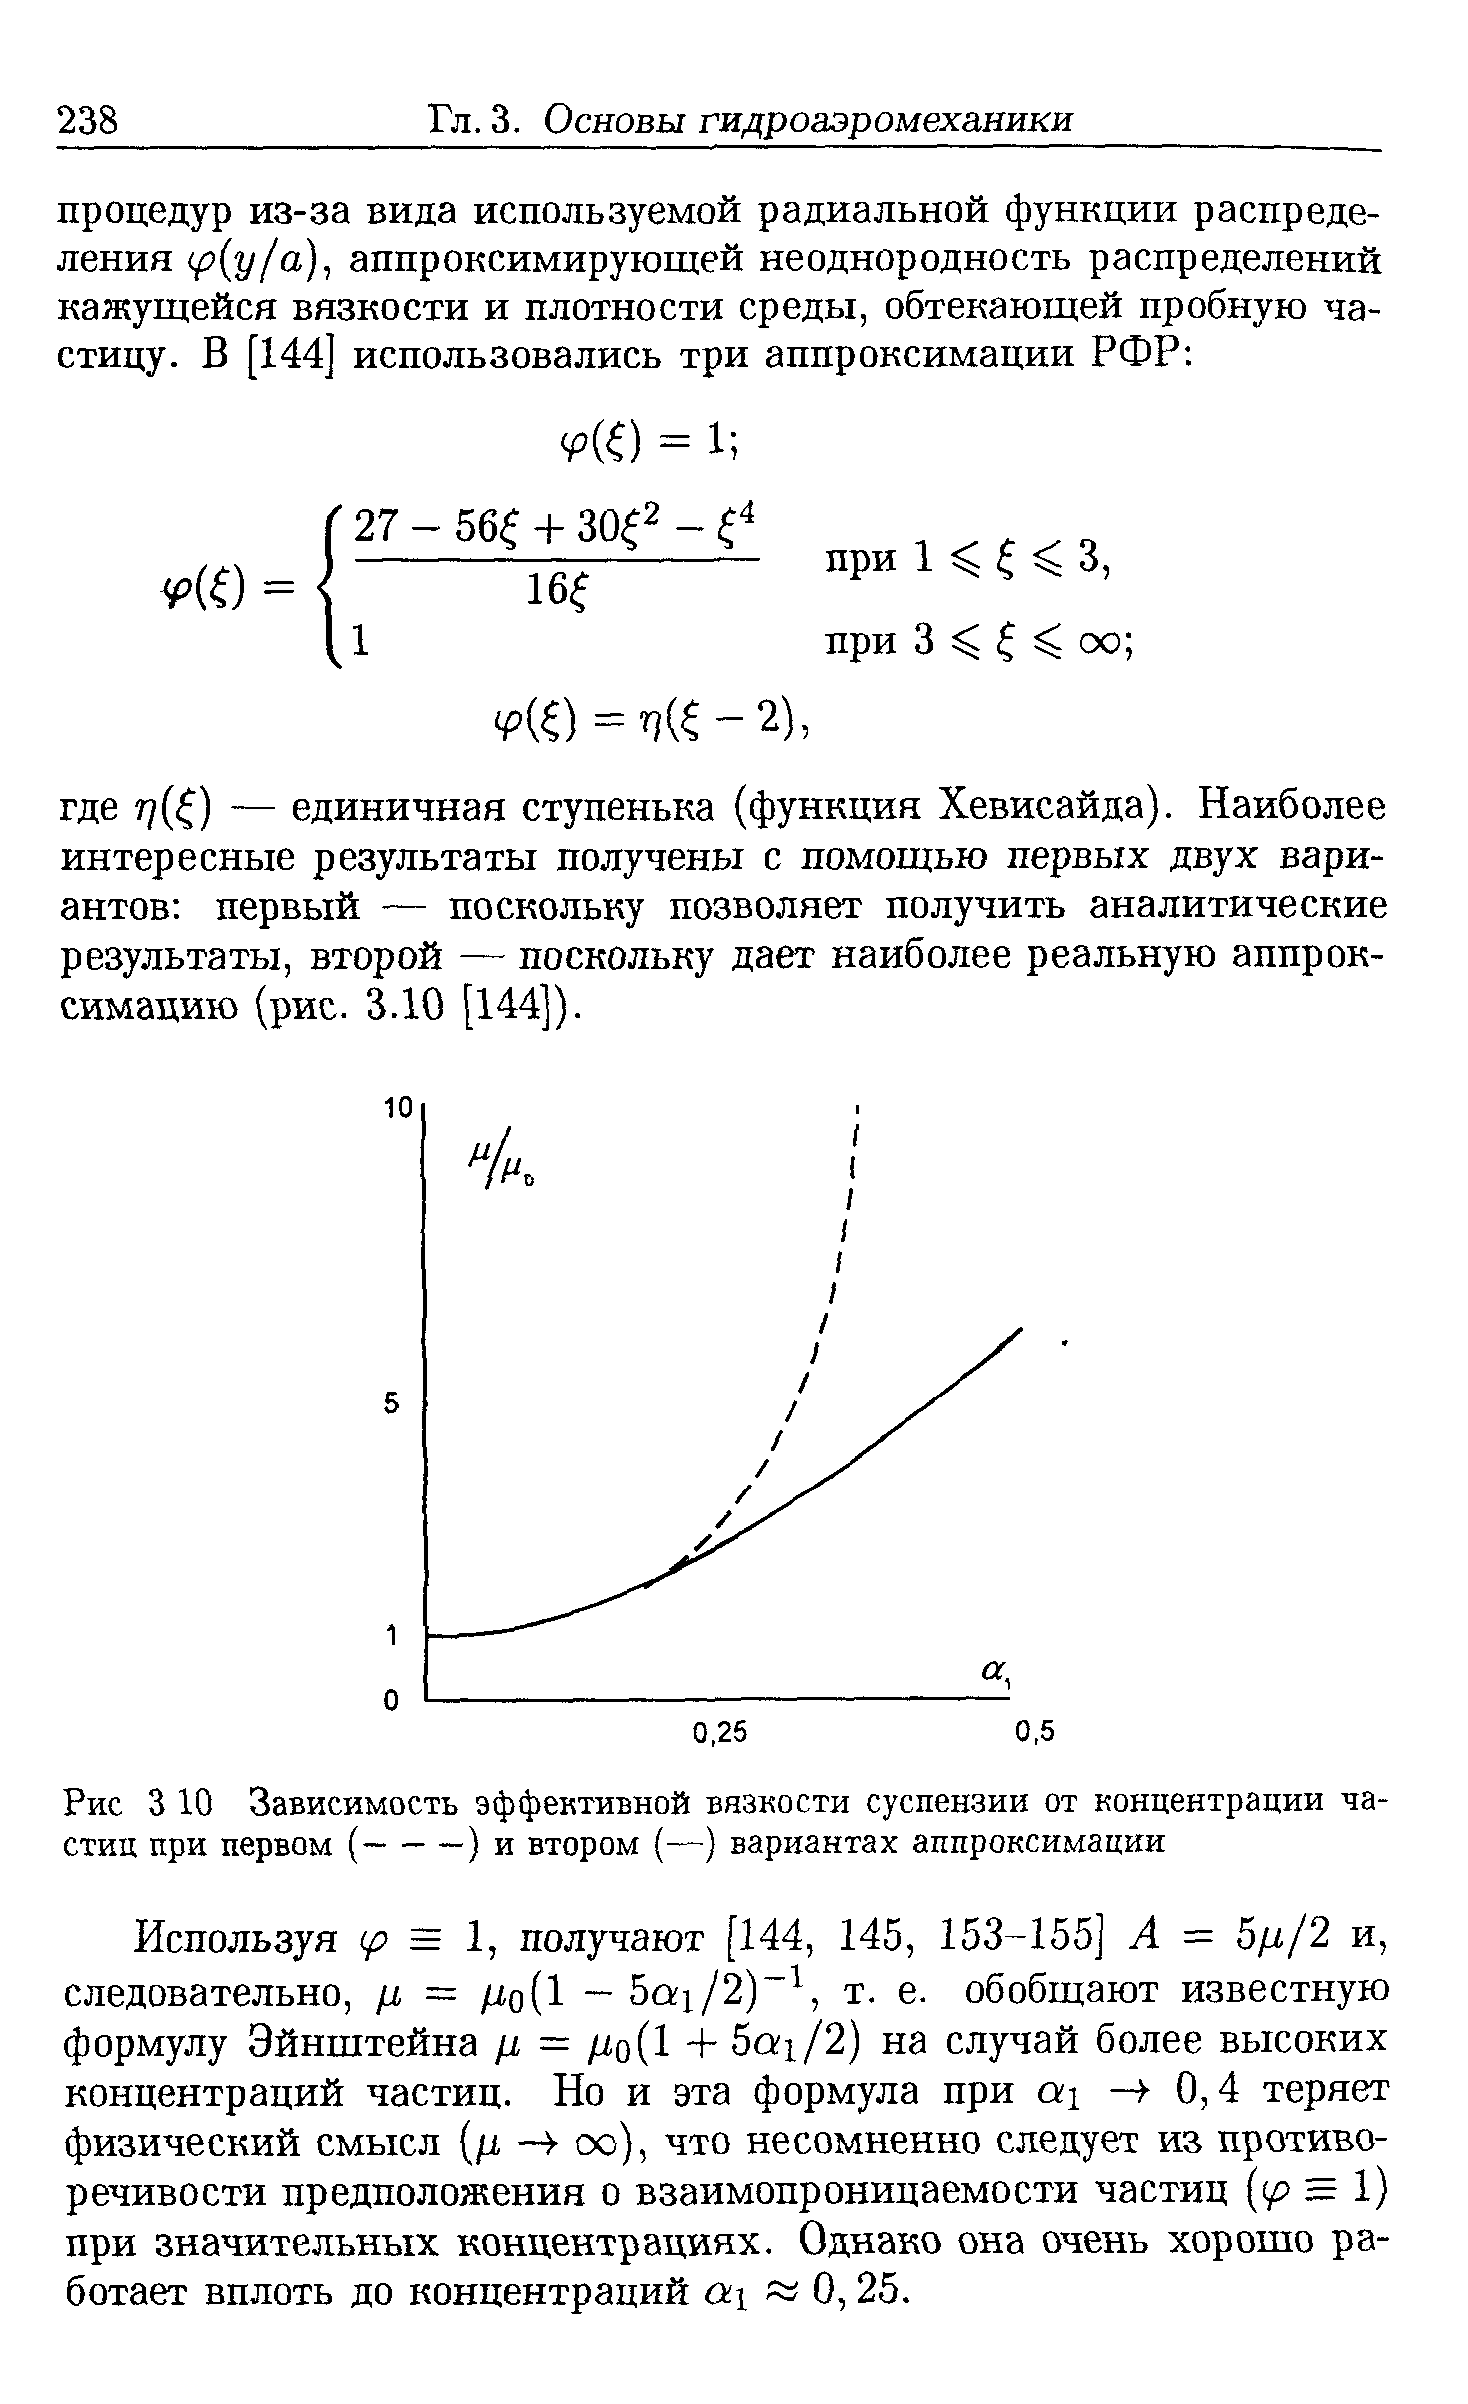 Используя (р = 1, получают [144, 145, 153-155] А = 5/г/2 и, следовательно, л = /хо(1 - 5а1/2) , т. е. обобщают известную формулу Эйнштейна = /хо(1 + Ьах/2) на случай более высоких концентраций частиц. Но и эта формула при ах — -0,4 теряет физический смысл (д оо), что несомненно следует из противоречивости предположения о взаимопроницаемости частиц (р = 1) при значительных концентрациях. Однако она очень хорошо работает вплоть до концентраций а 0,25.